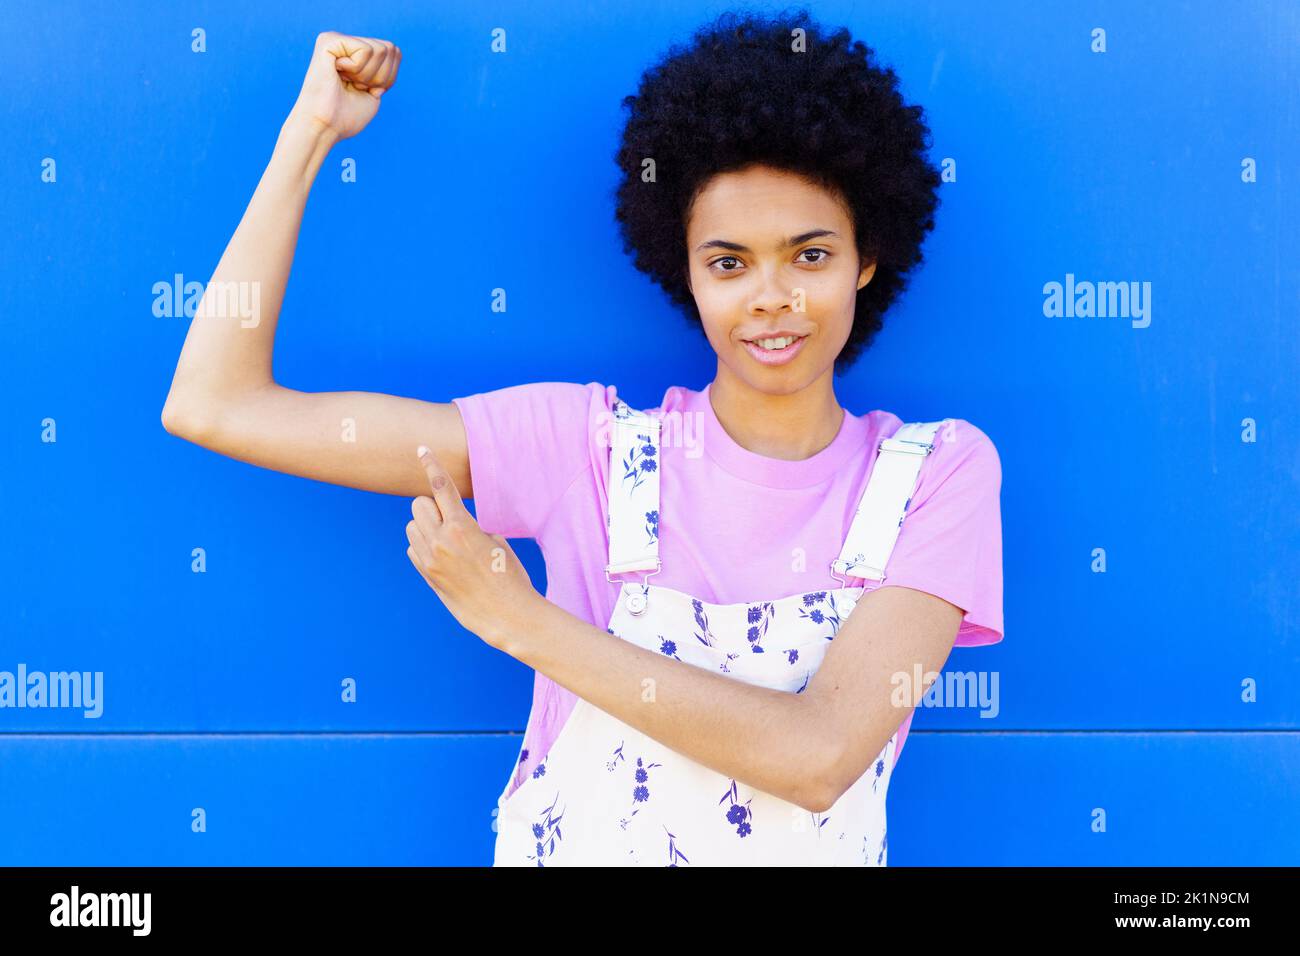 Donna nera che mostra i muscoli vicino alla parete blu Foto Stock